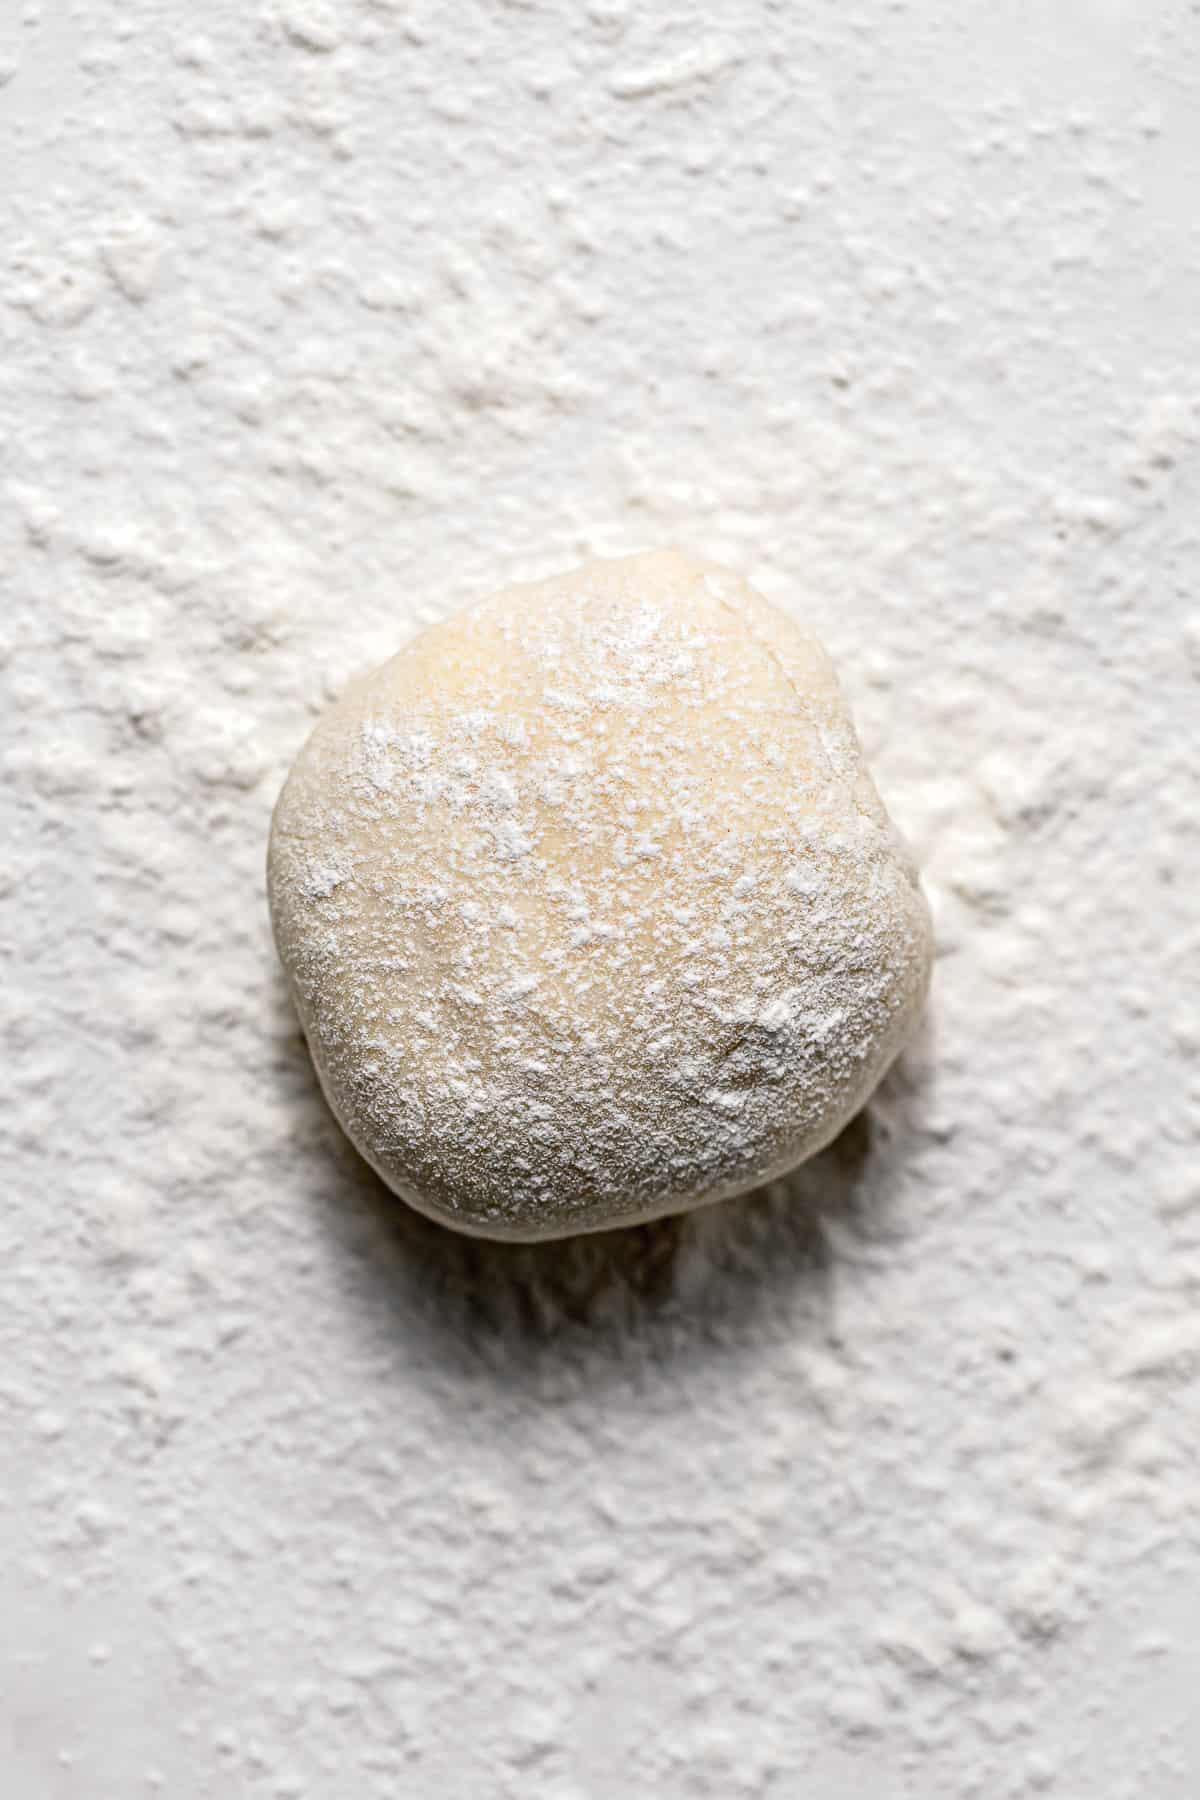 pie dough on floured surface. 